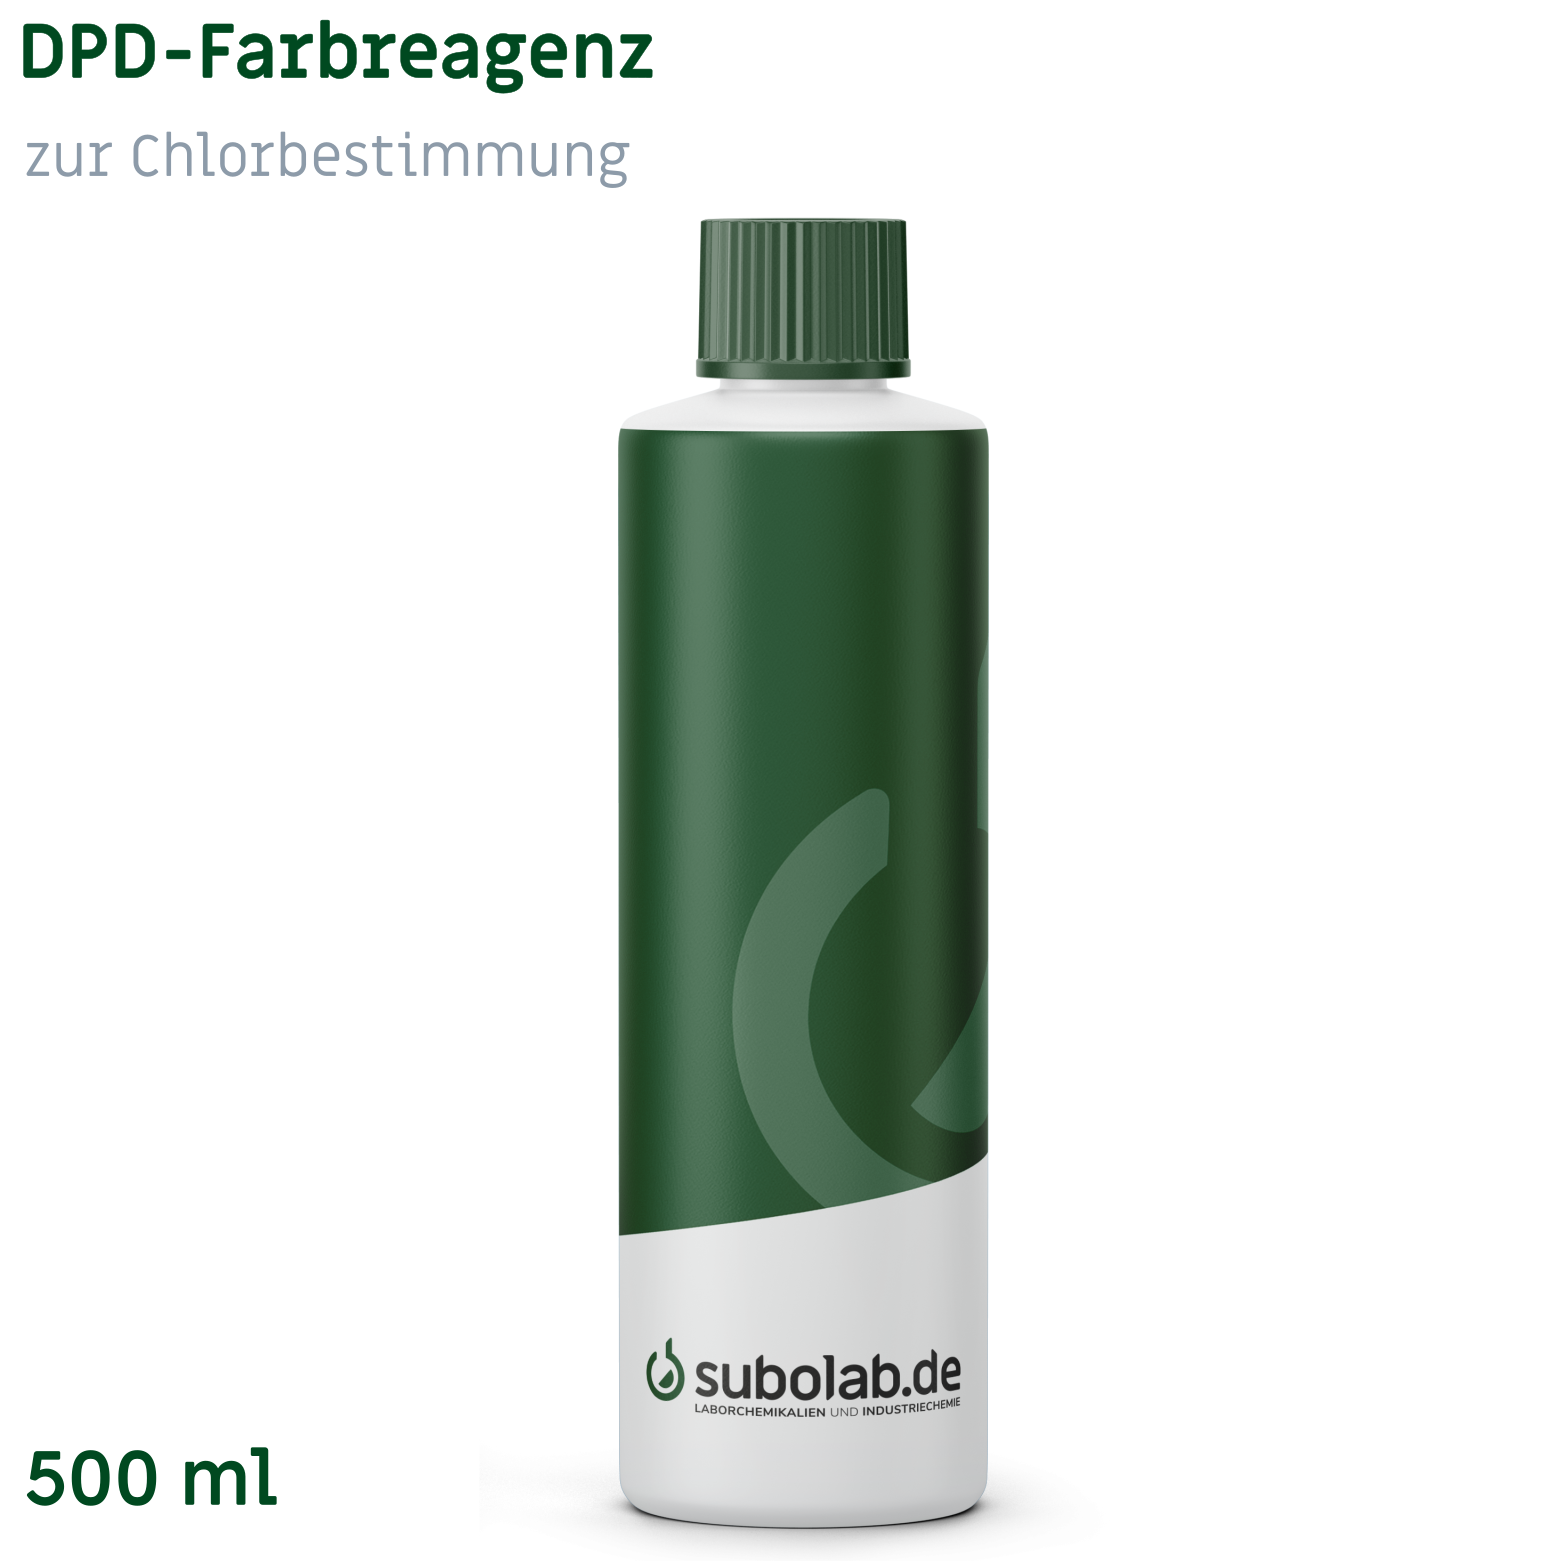 Bild von DPD-Farbreagenz zur Chlorbestimmung
(Kühl und dunkel lagern !!!) (500 ml)